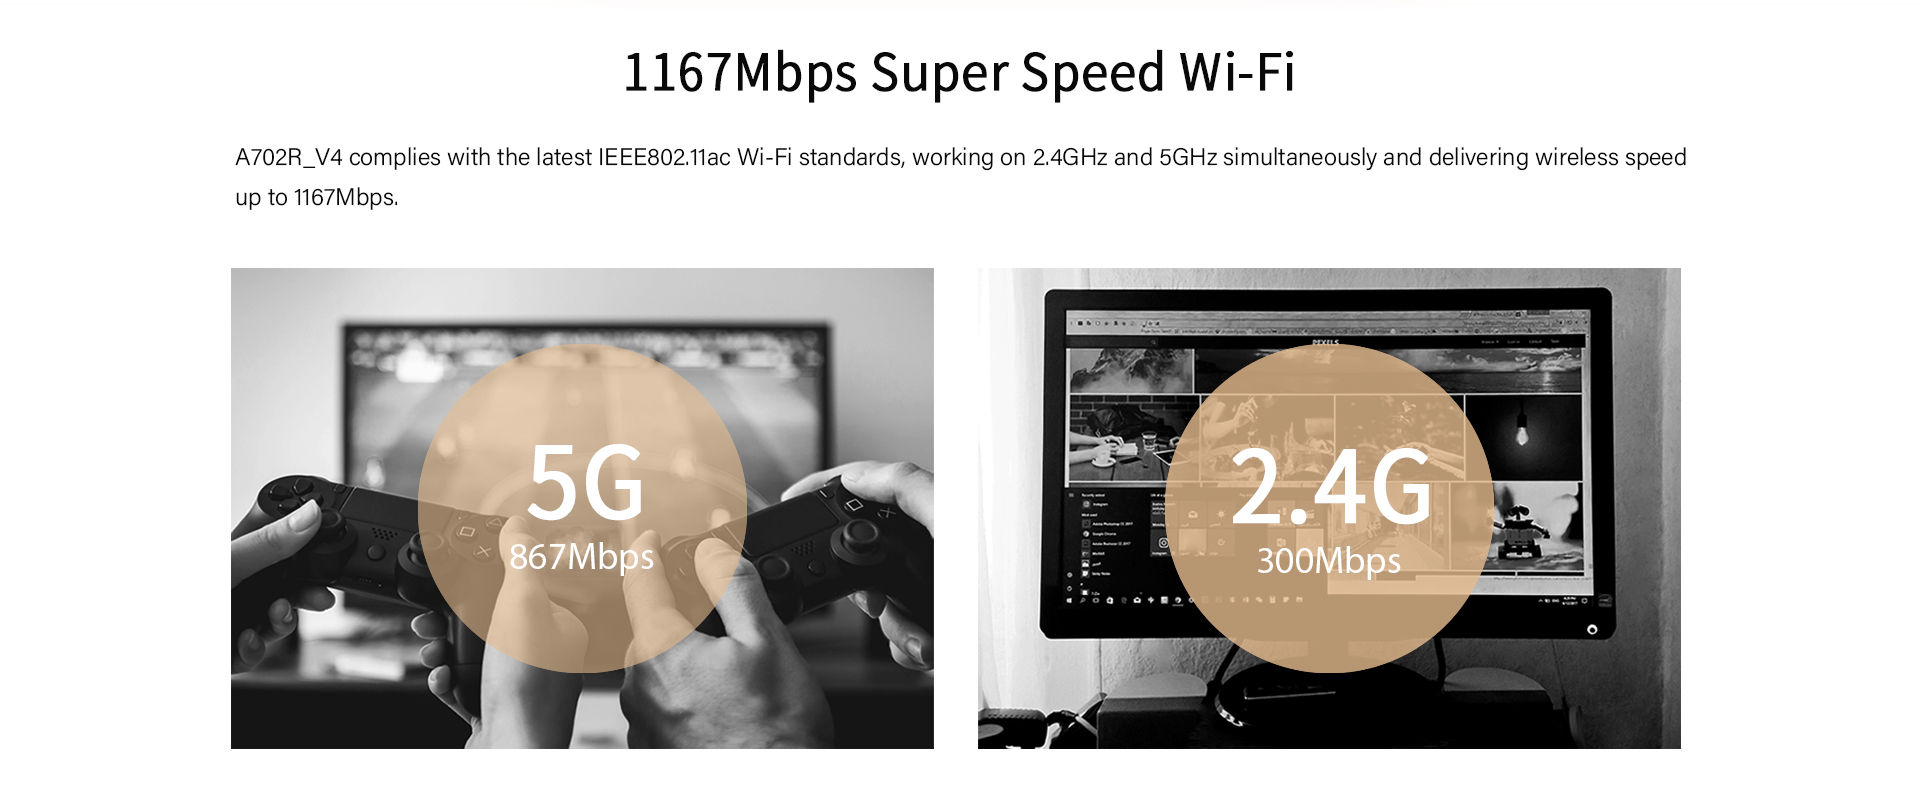 Super-fast Speed Wi-Fi